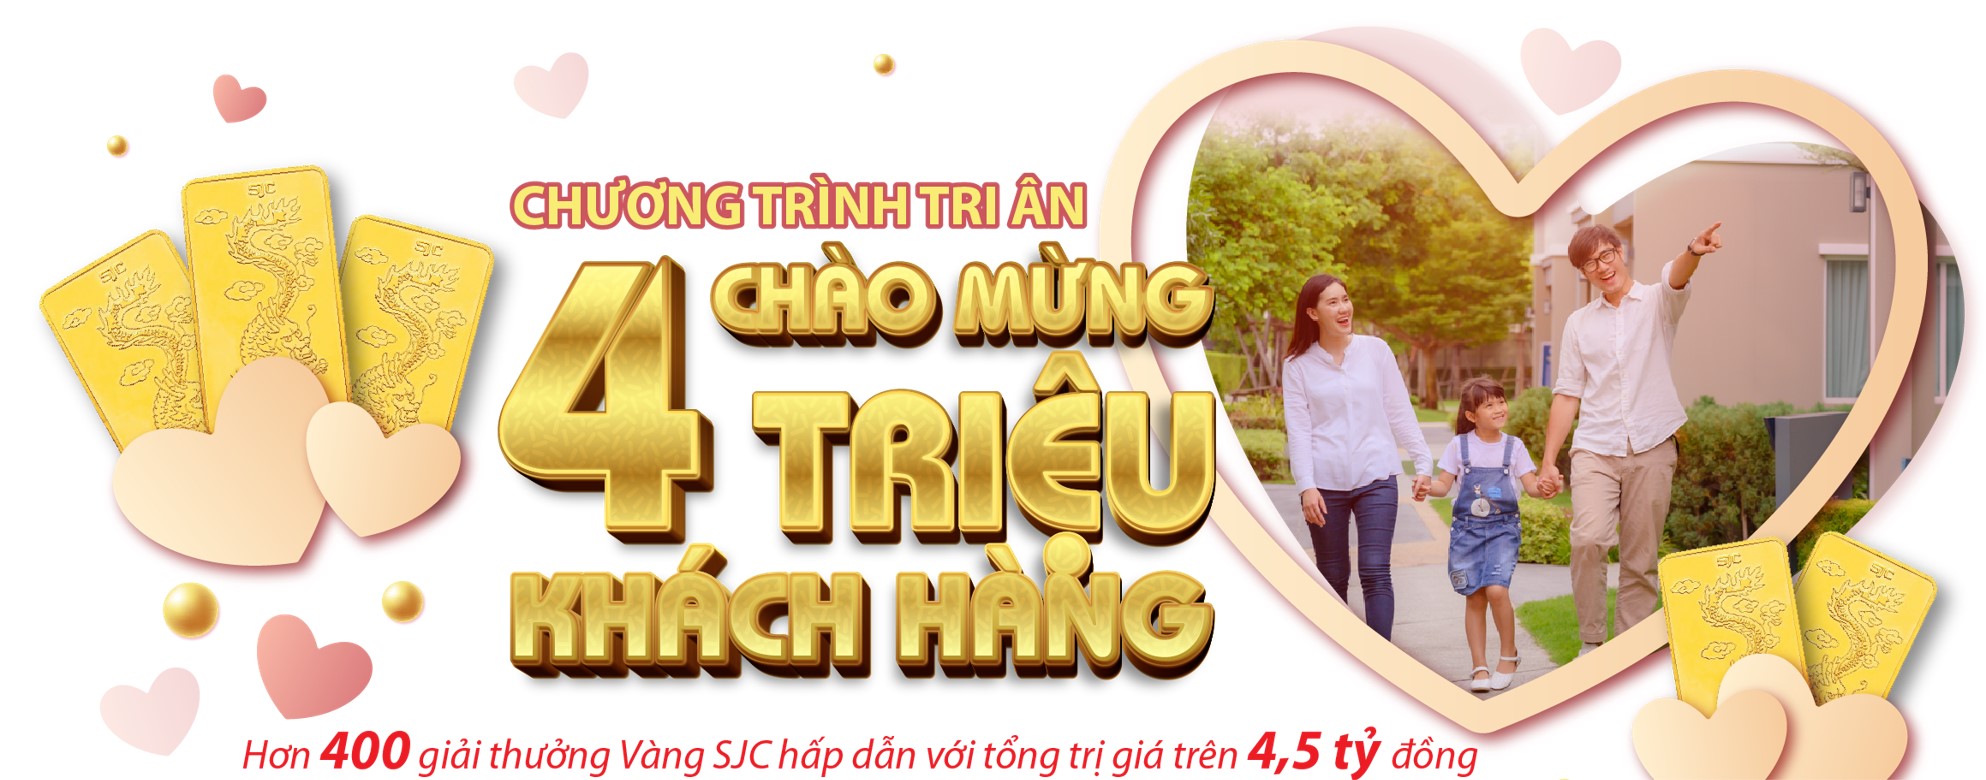 Dai-ichi Life Việt Nam thông báo sửa đổi nội dung chương trình khuyến mại “Dai-ichi Life Việt Nam tri ân khách hàng nhân dịp đạt cột mốc phục vụ khách hàng thứ 4 triệu”